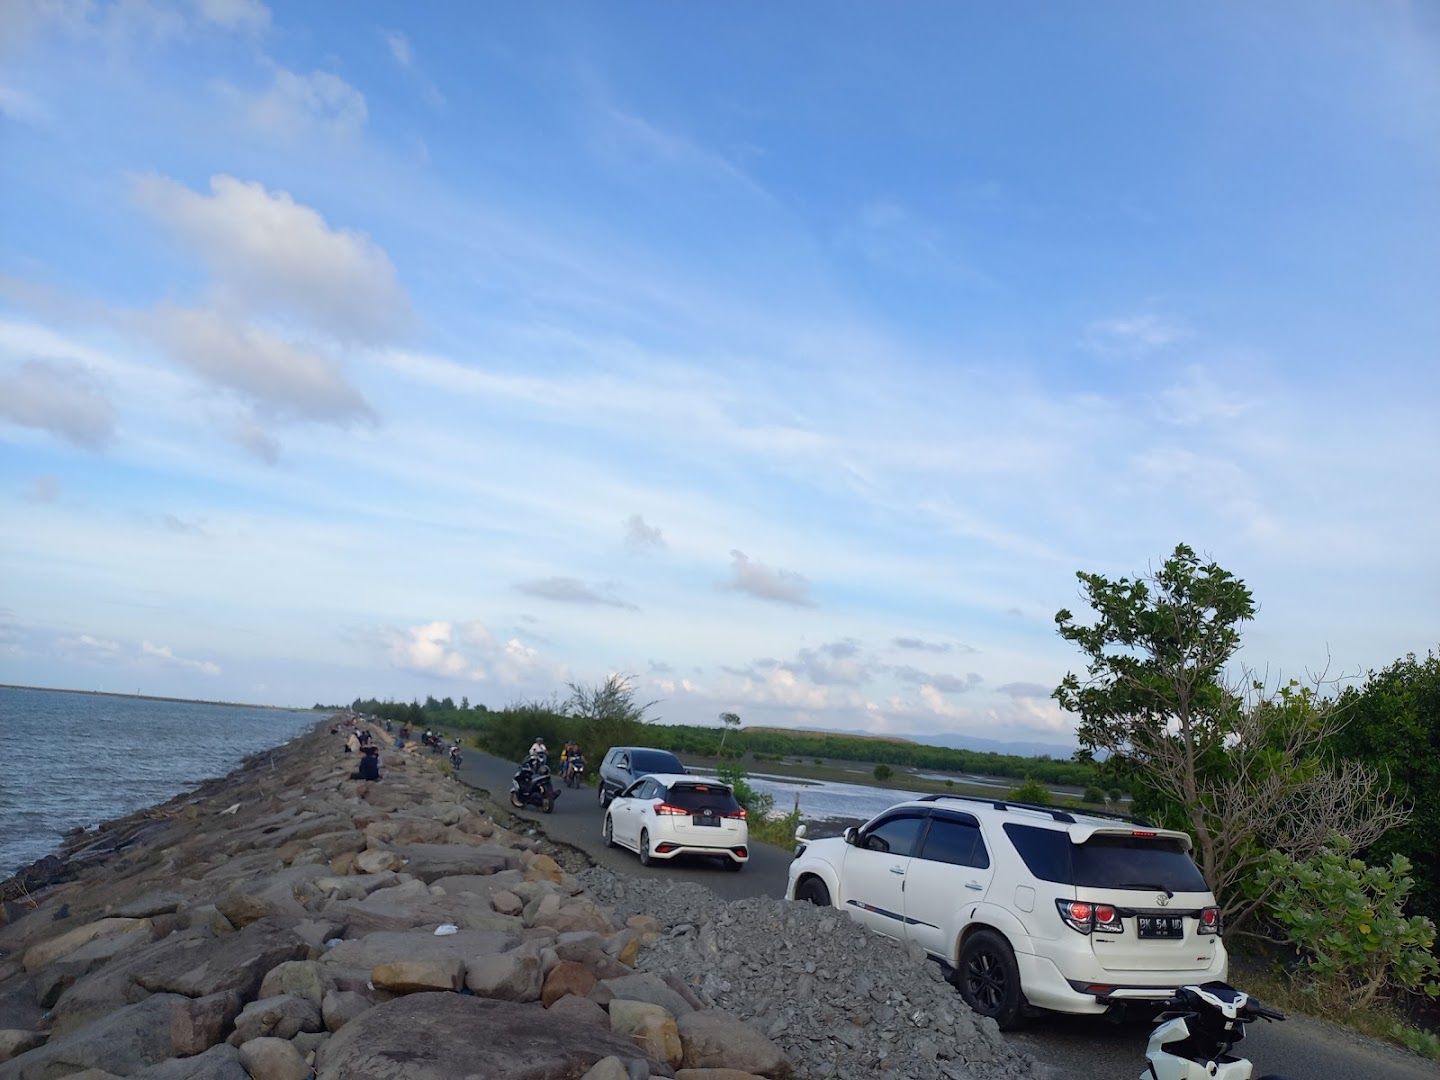 Gambar Pantai Mangrove Ulee Lheue